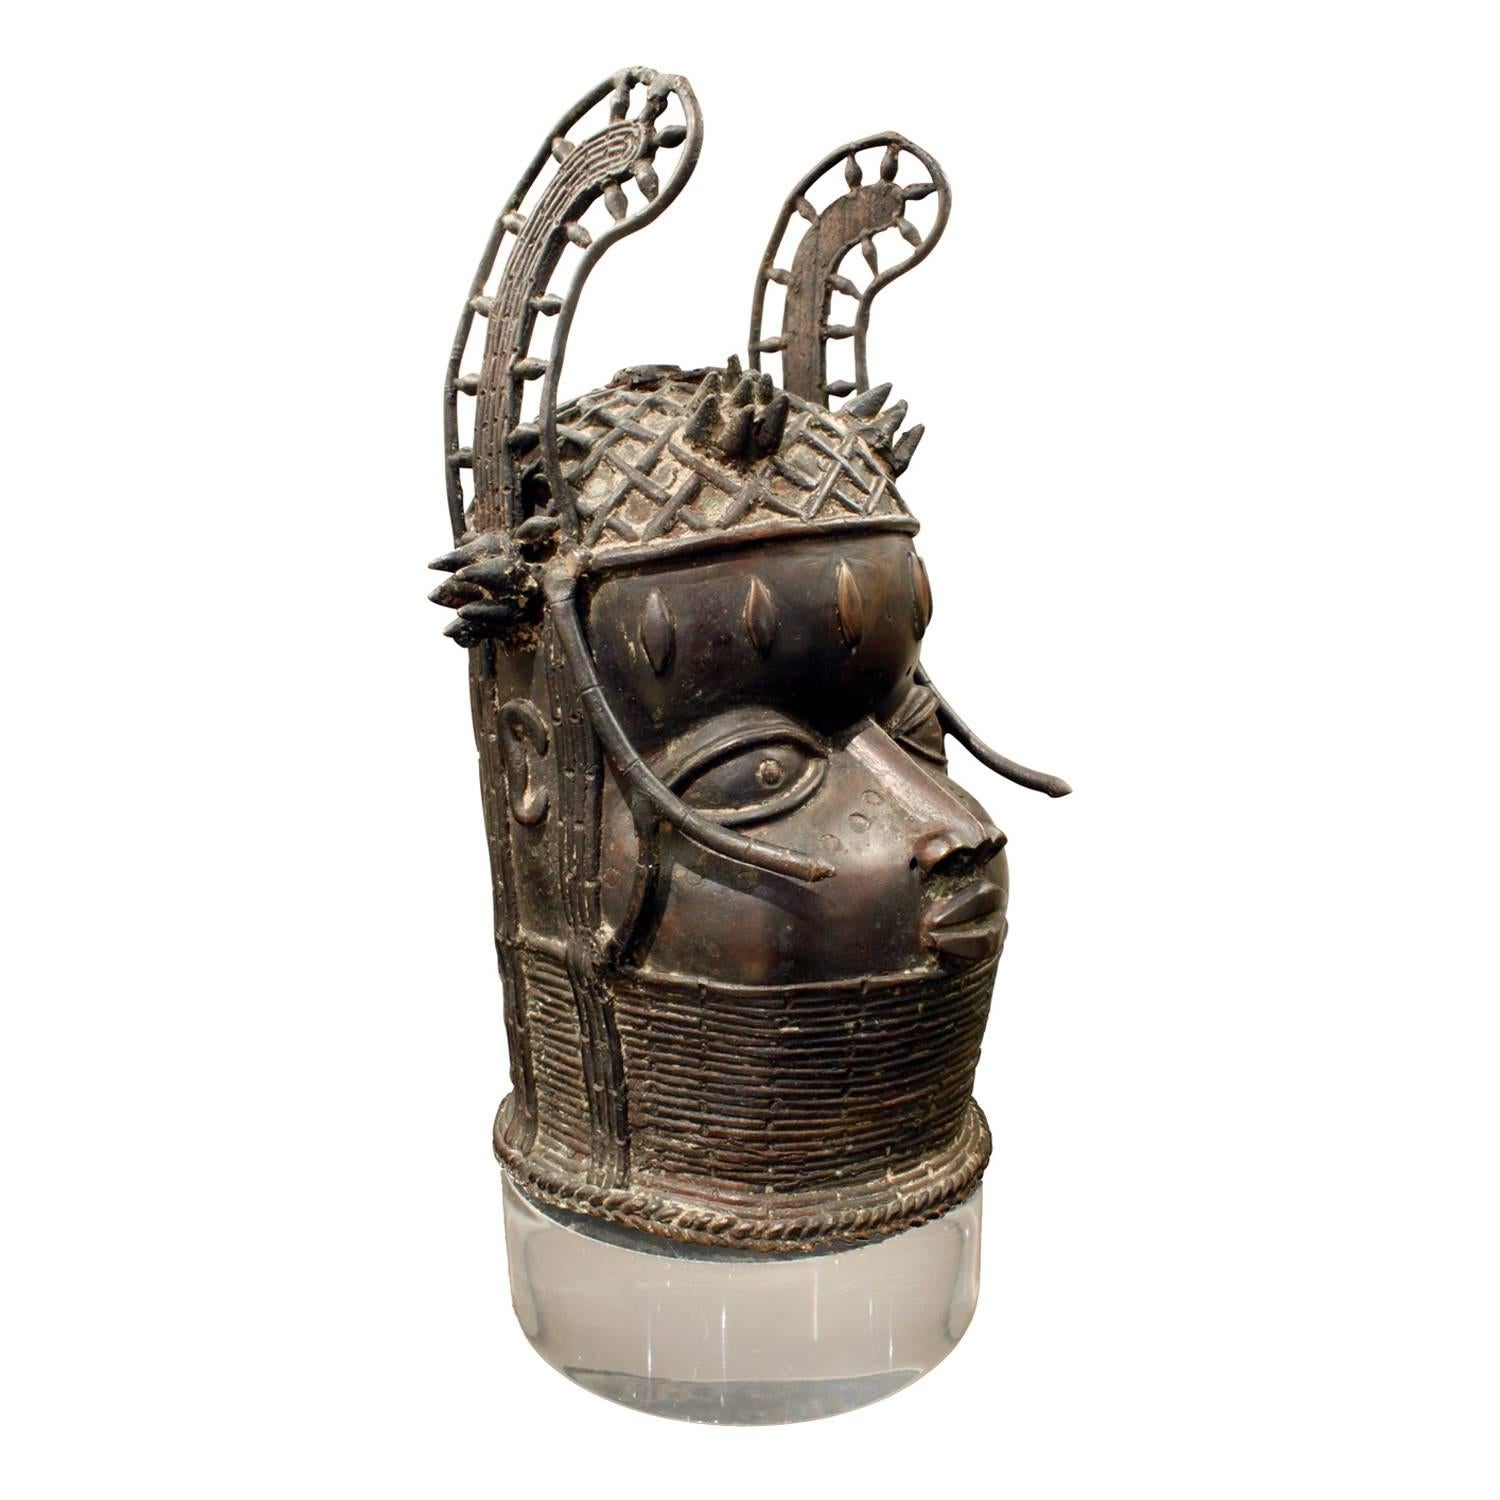 Authentischer Benin-Kopf aus Bronze auf einem speziell angefertigten Lucite-Sockel von Karl Springer, USA, 1970er Jahre (mit Echtheitszertifikat von Karl Springers ehemaligem Direktor für Design). Springer bezog in seine Entwürfe oft schöne Werke